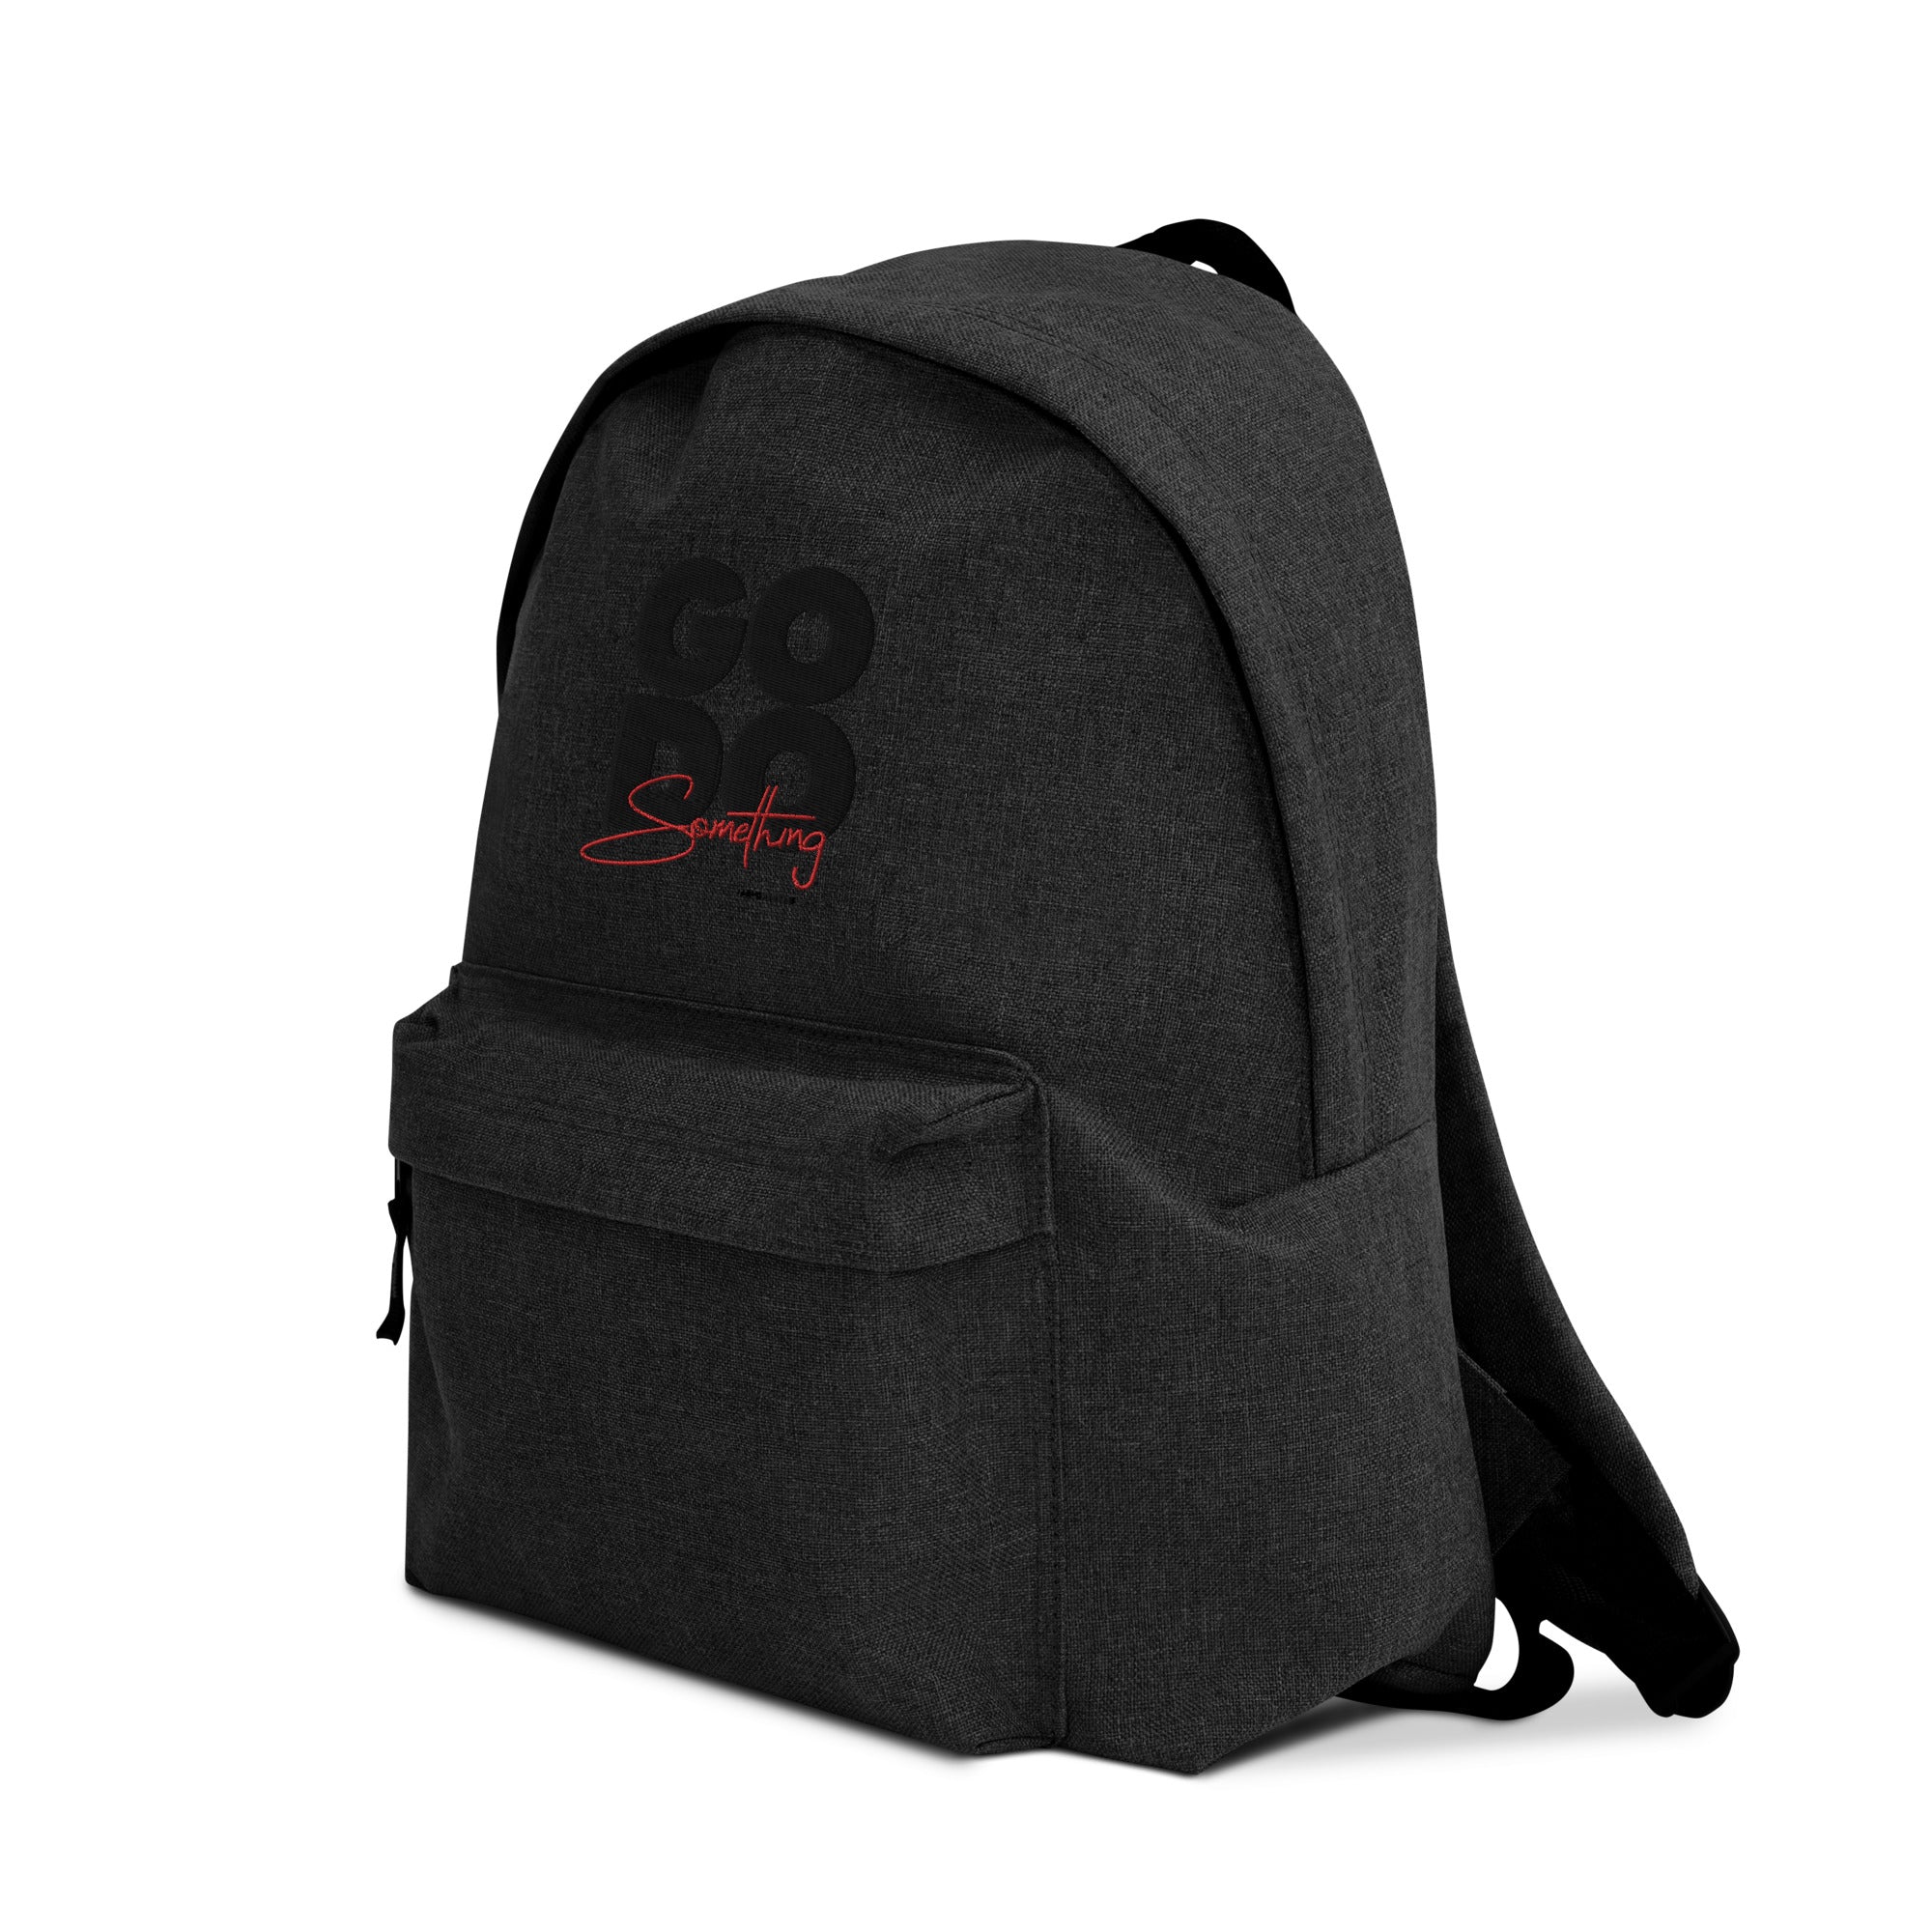 GoDoSomething Embroidered Backpack